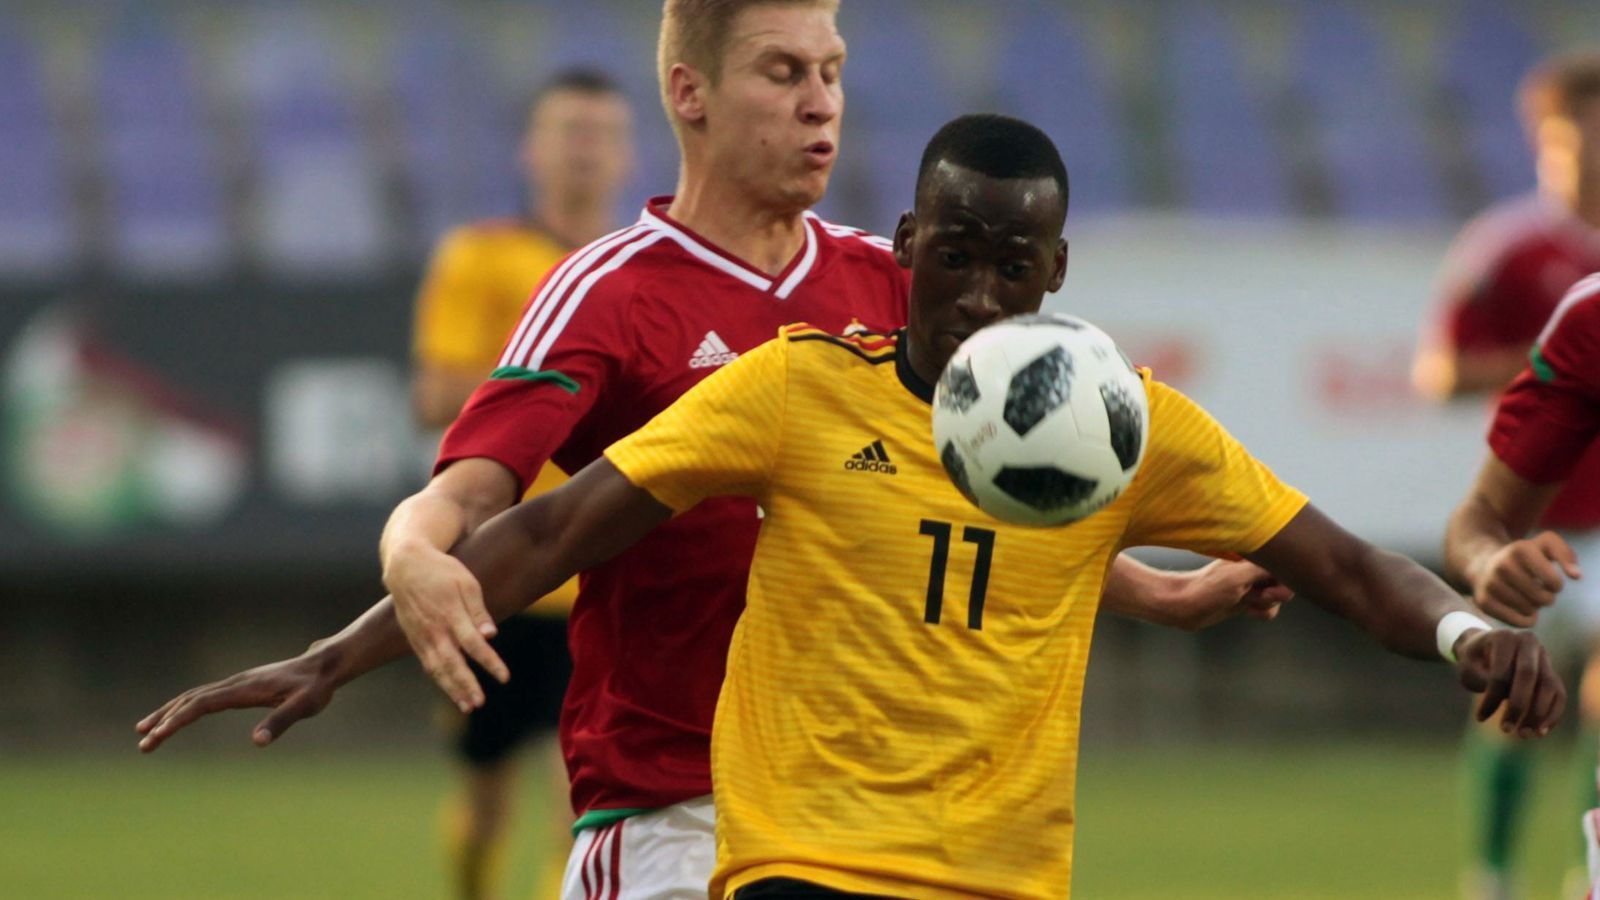 
                <strong>Einsätze in Belgiens U21</strong><br>
                In Sachen Nationalmannschaft hat Dodi Lukebakio noch immer alle Optionen. Zurzeit läuft das Stürmer-Juwel für die U21 seines Geburtslandes Belgien auf, so auch zuletzt in der Länderspielpause beim 3:3 im Testspiel gegen Rumänien. Insgesamt kam Lukebakio zwölf Mal für die belgische U21-Auswahl zum Einsatz (vier Tore). Doch der Torjäger hat auch schon ein A-Länderspiel bestritten - für den Kongo, das Land seiner Vorfahren. Im Oktober 2016 kam er zu einem Länderspiel-Kurzeinsatz für die Demokratische Republik gegen Kenia. Da es sich dabei um ein Freundschaftsspiel handelte, kann sich Lukebakio in Zukunft immer noch zwischen den beiden Ländern entscheiden.
              